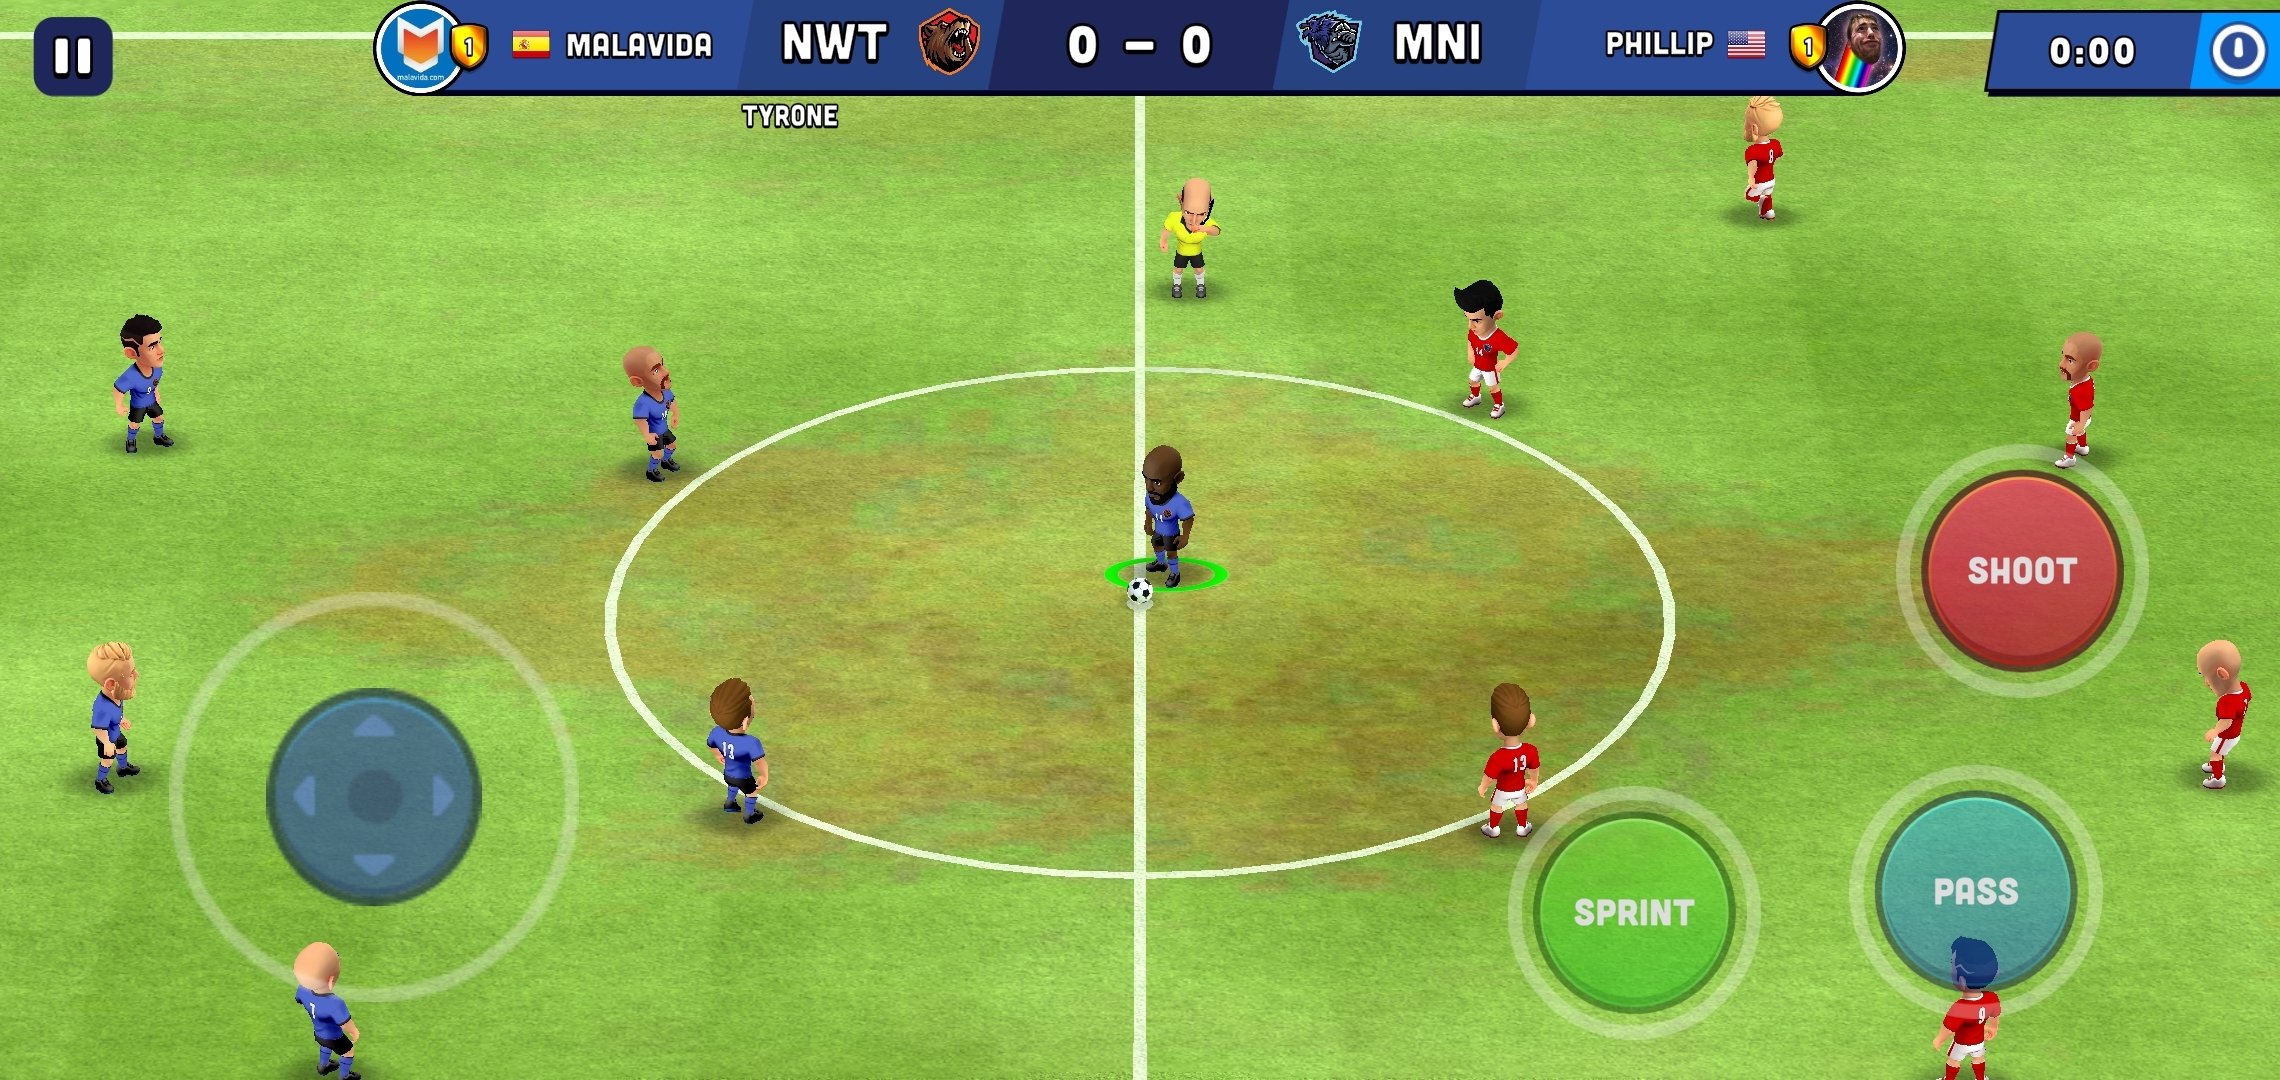 Baixe Mini Football no PC com MEmu